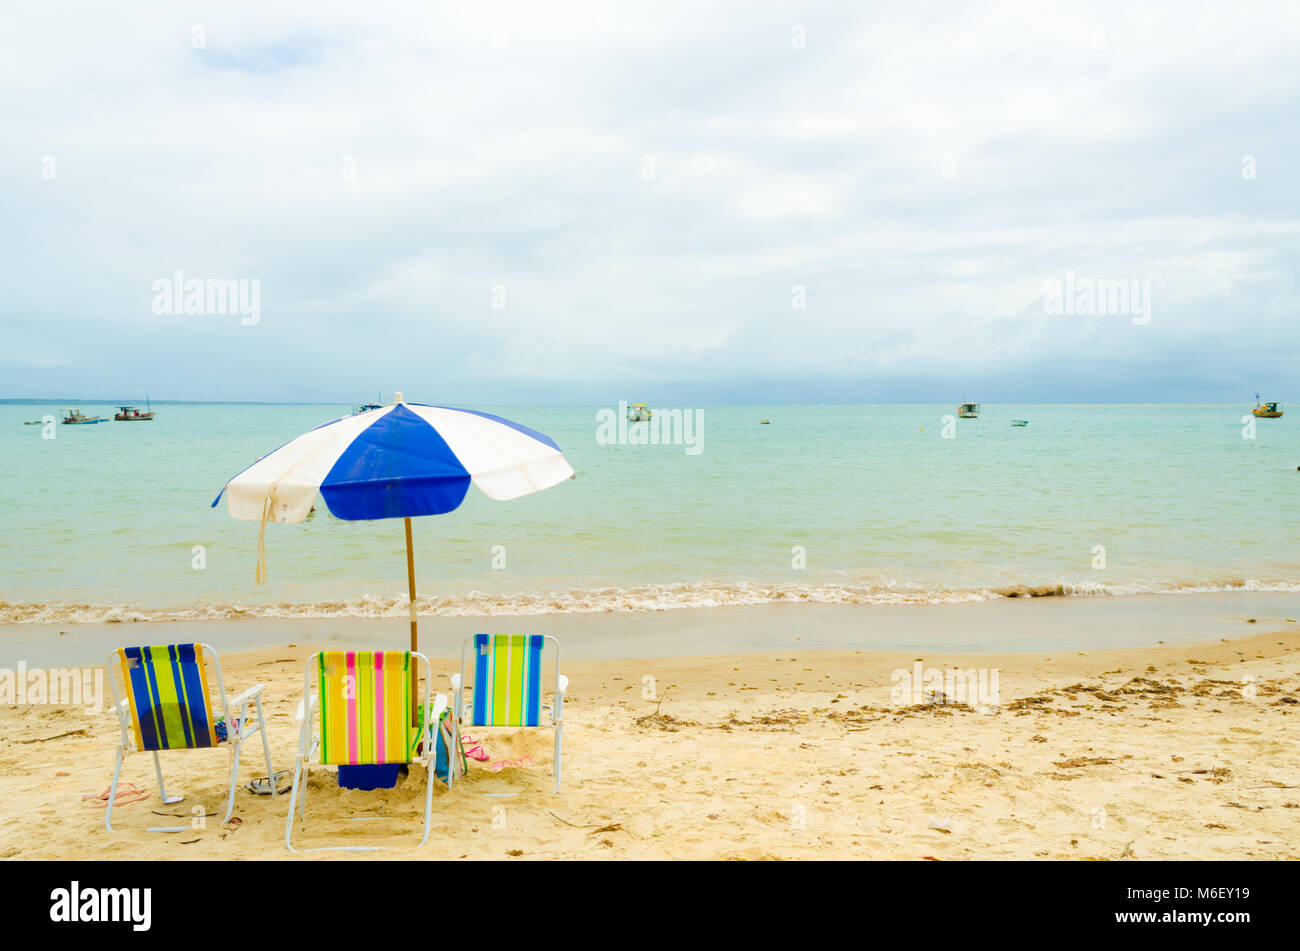 Playa aislada con tres coloridos sillas de playa y un paraguas de color azul y blanco. Una pequeña ola rompe en la arena y algunos barcos están en el mar. Foto de stock